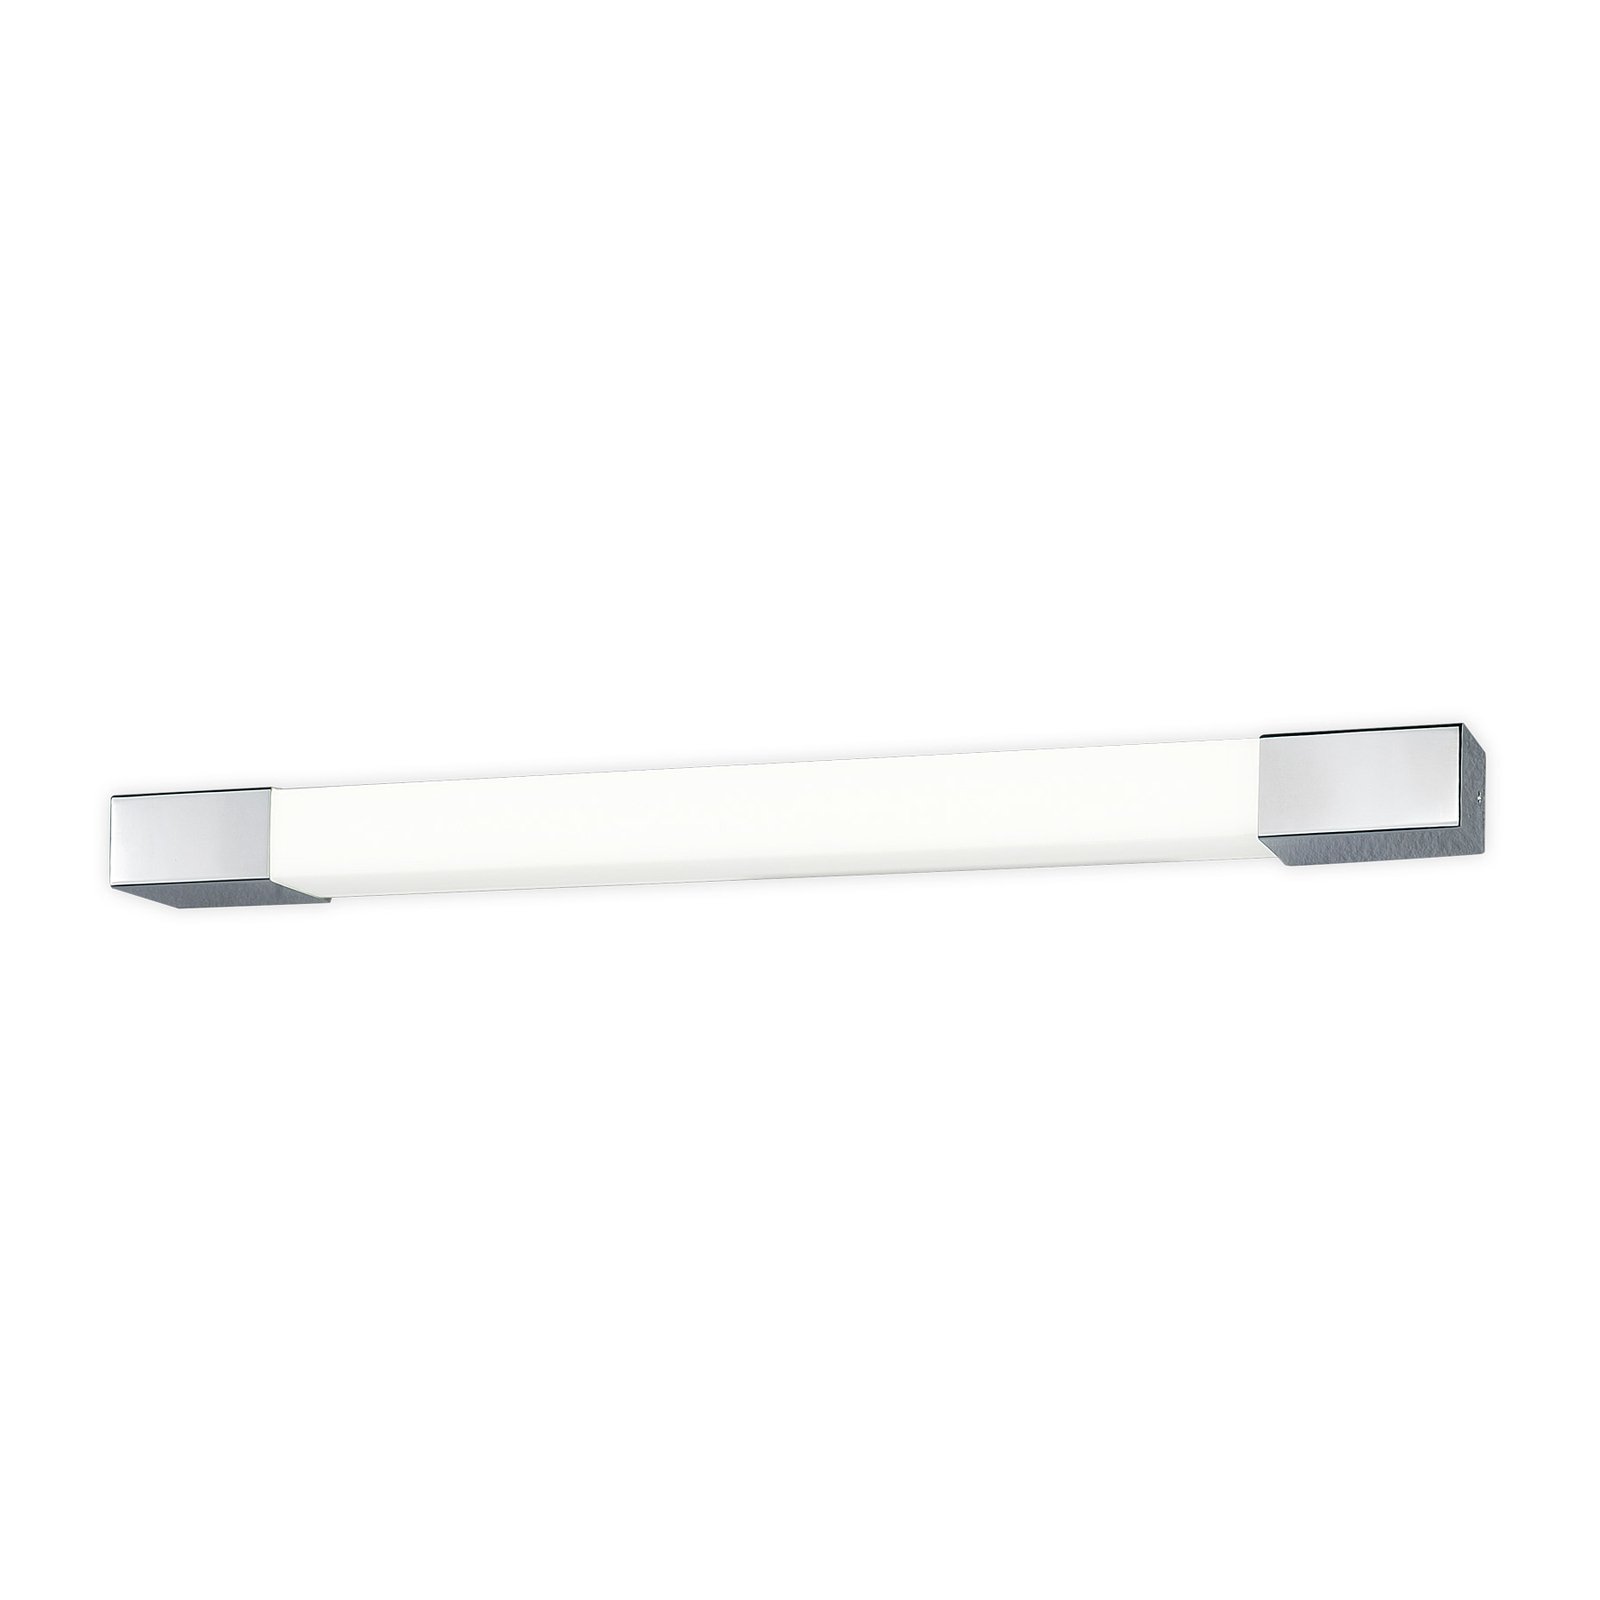 Egger Supreme LED wall light, stainless steel, 130 cm